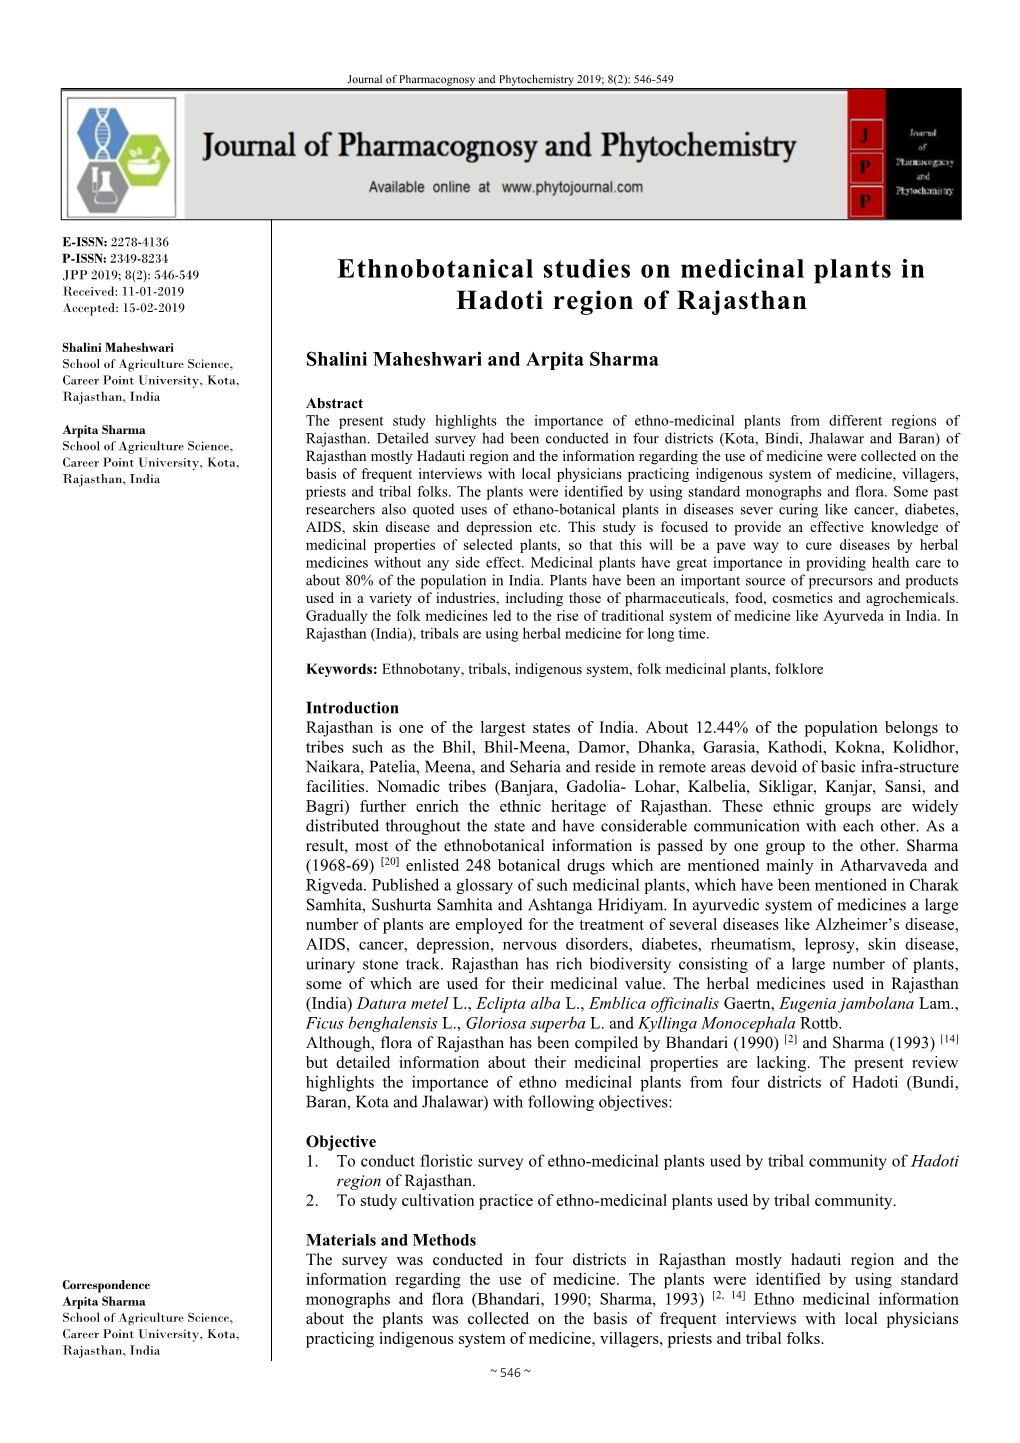 Ethnobotanical Studies on Medicinal Plants in Hadoti Region of Rajasthan